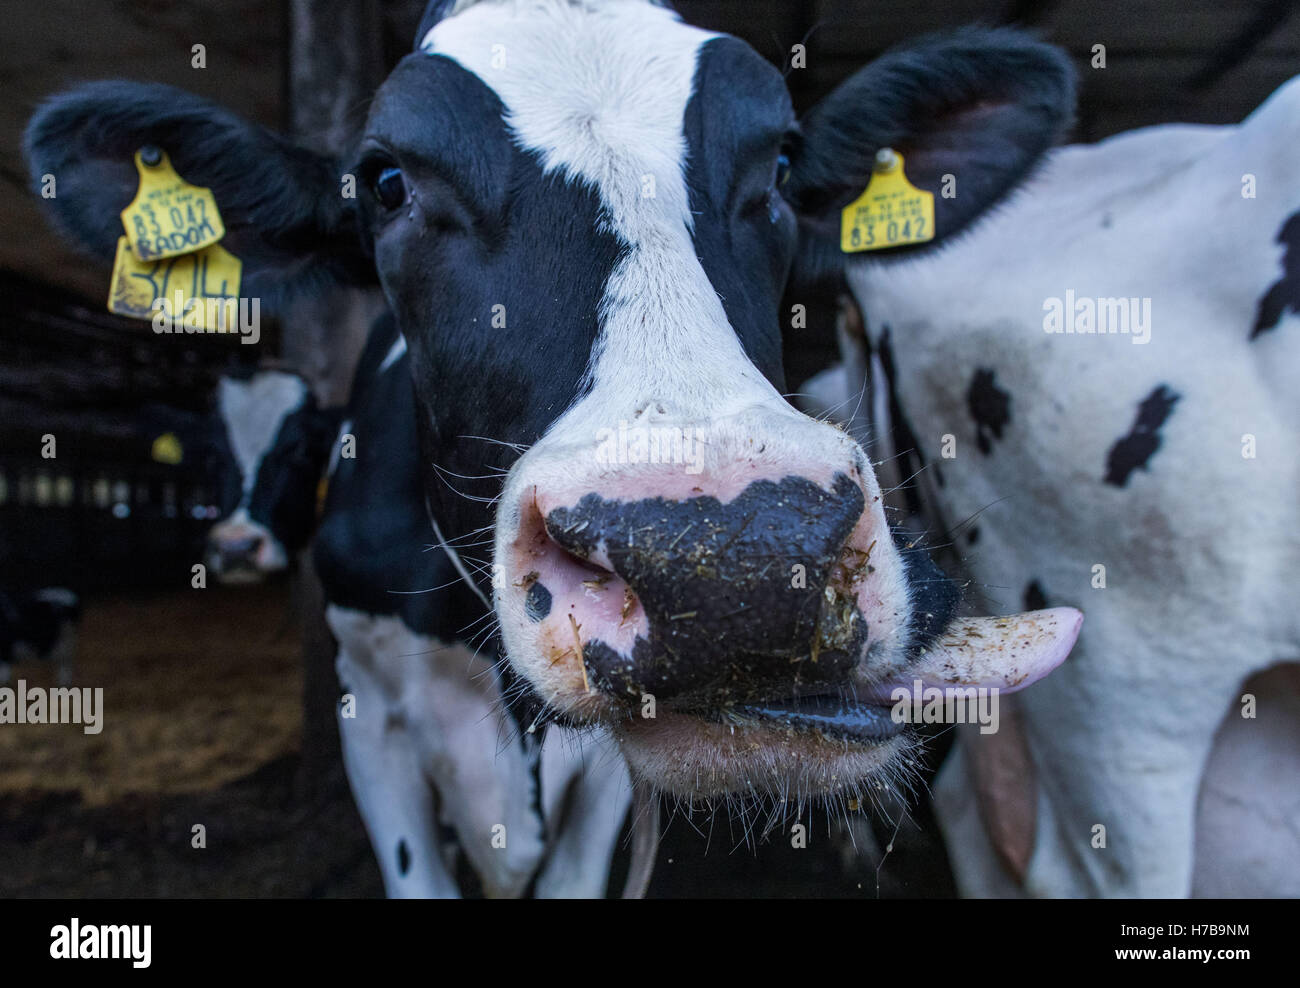 Boeken, Allemagne. 26Th Oct, 2016. Certaines de ces vaches dans une étable de la coopérative de production à Cramonshagen Boeken, Allemagne, 26 octobre 2016. La coopérative s'arrête leur production laitière, le dernier des 400 vaches laitières doit quitter les écuries dans les jours à venir, qui sera démoli. Environ 5 000 fermes laitières en Allemagne arrêté leur production en raison de la crise du marché du lait, le ministère de l'Agriculture a informé. PHOTO : JENS BUETTNER/dpa/Alamy Live News Banque D'Images